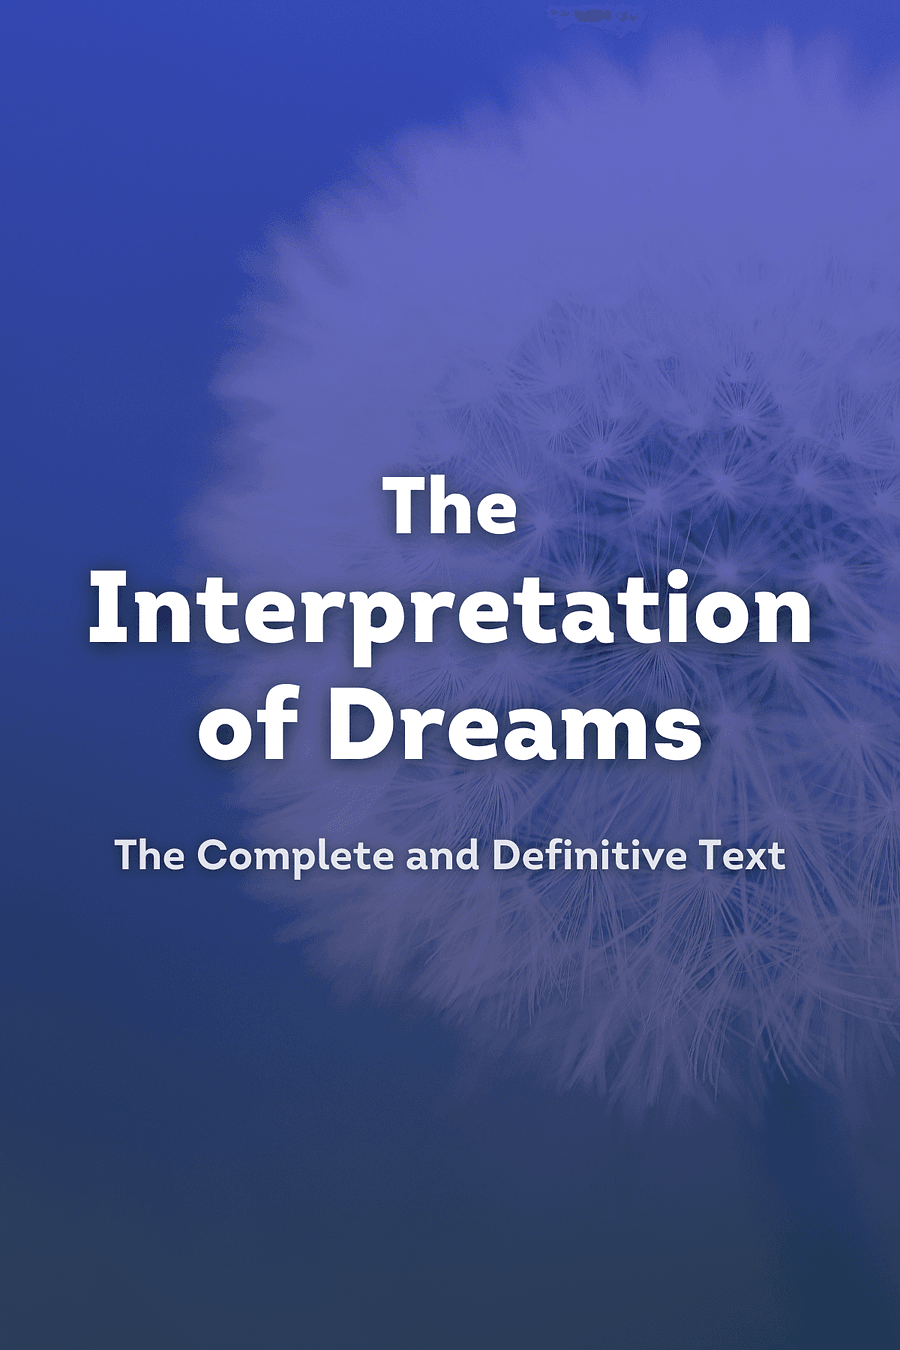 The Interpretation of Dreams by Sigmund Freud - Book Summary